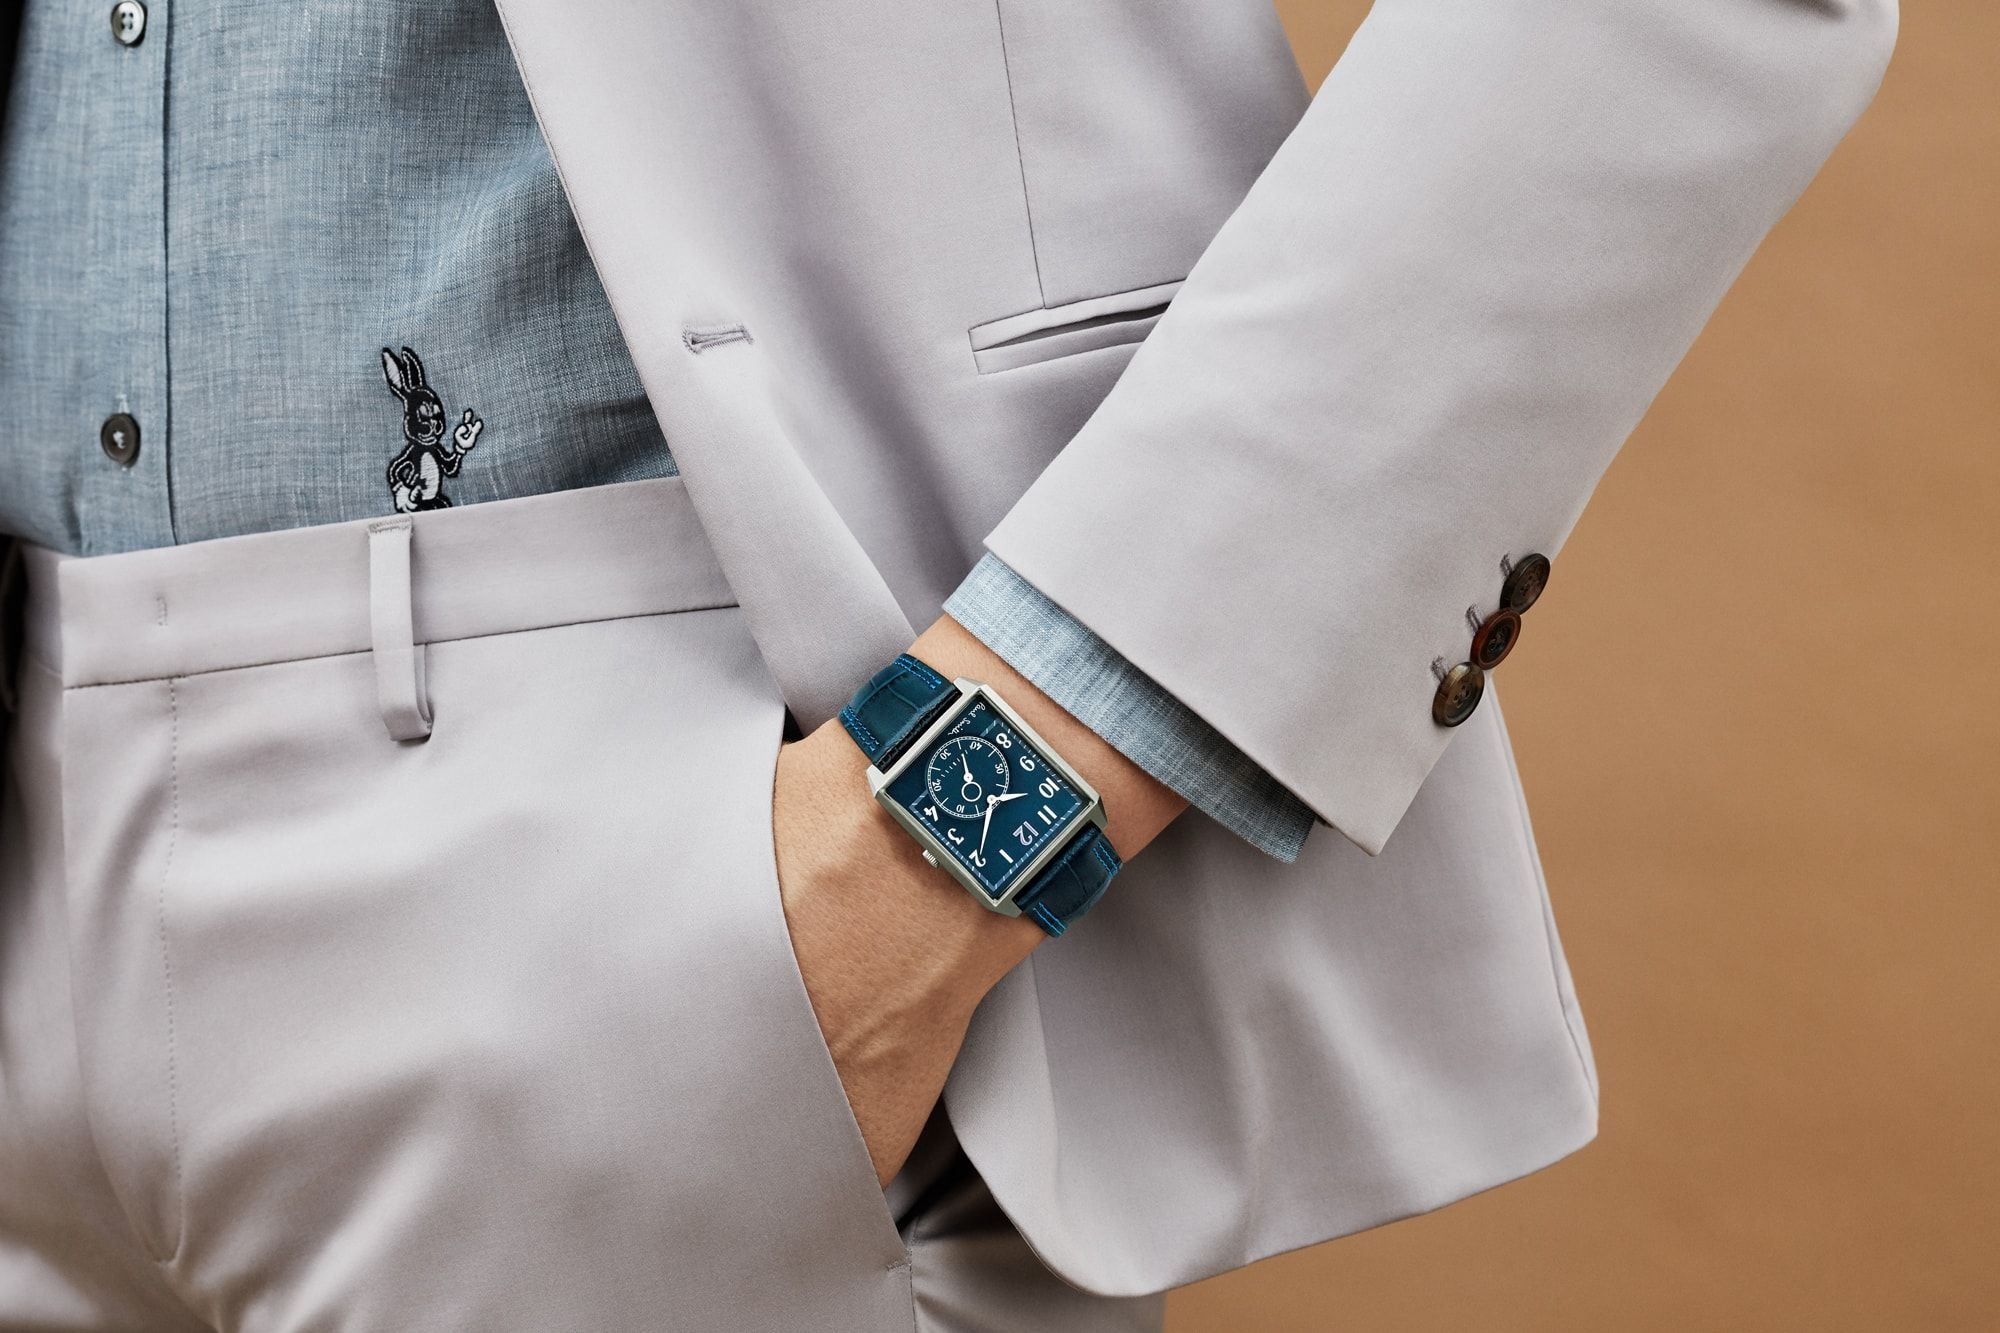 ポール・スミスの新作腕時計は、ロンドンの名所ビッグ・ベンがモチーフ